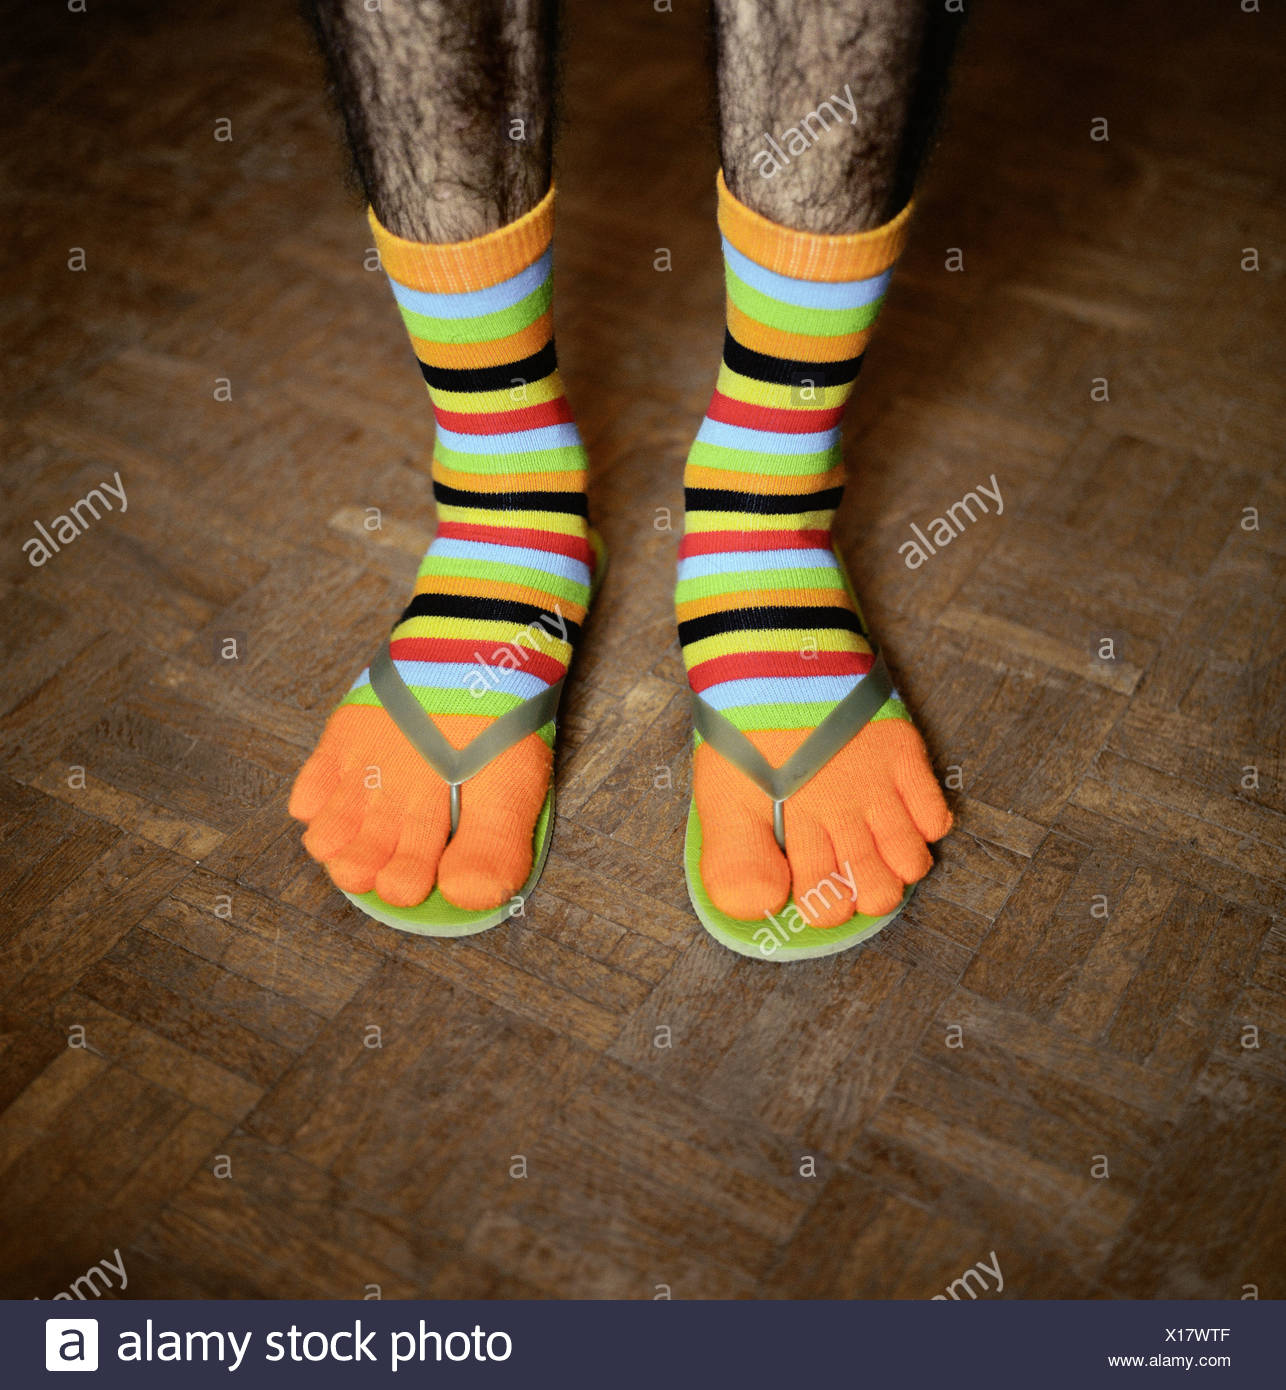 socks and flip flops